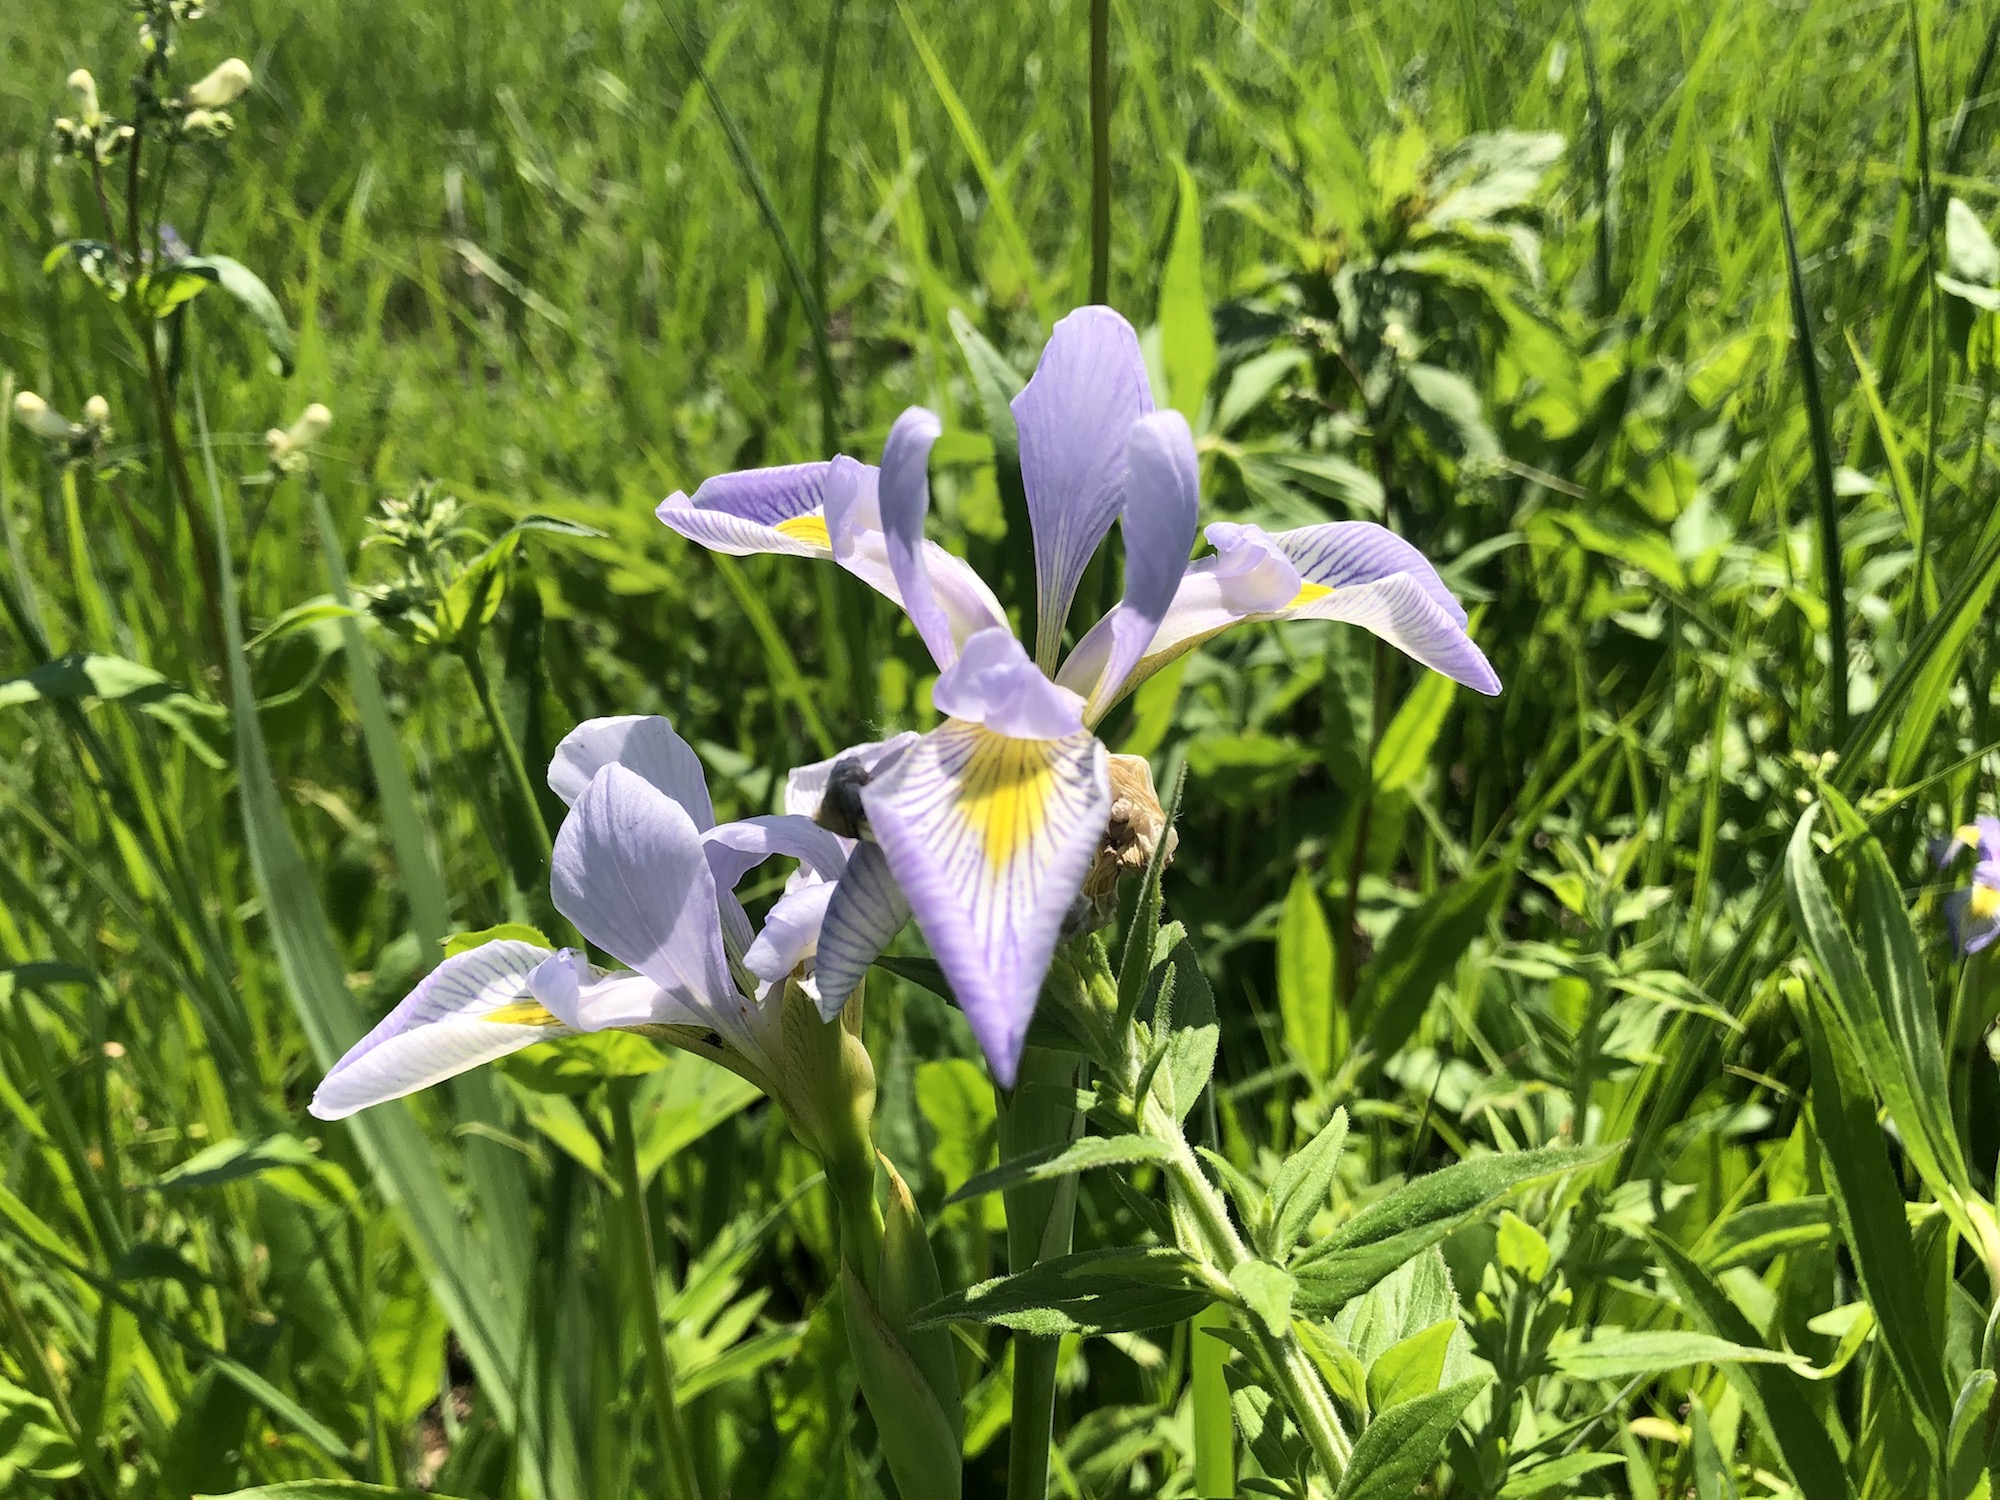 Blue Flag Iris in UW Arboretum Rain Garden June 4, 2021.